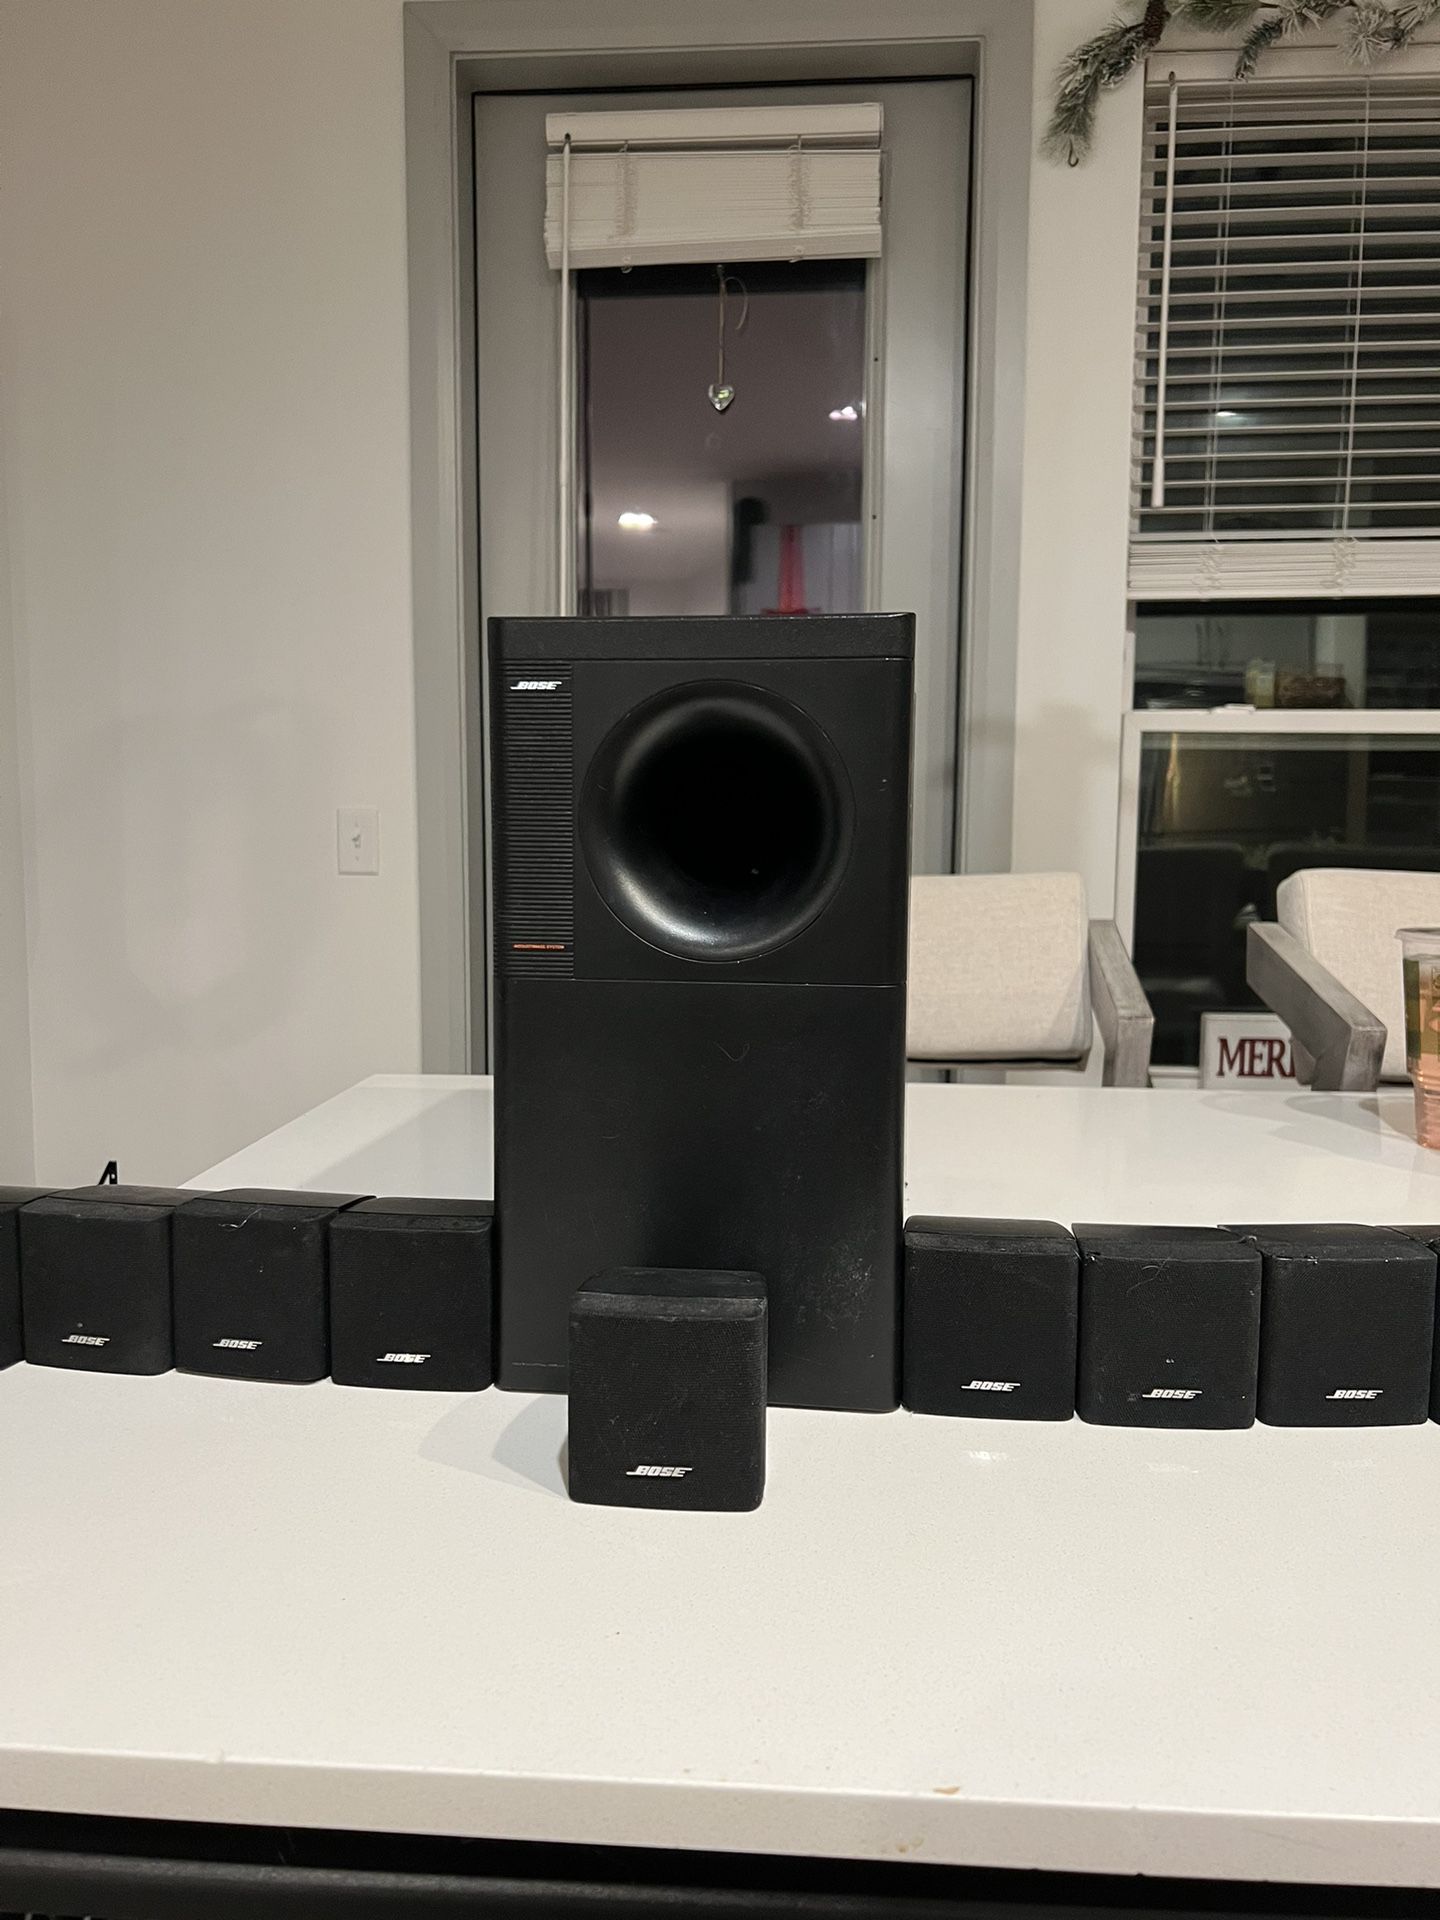 9.1 Bose Acoustimass model surround sound